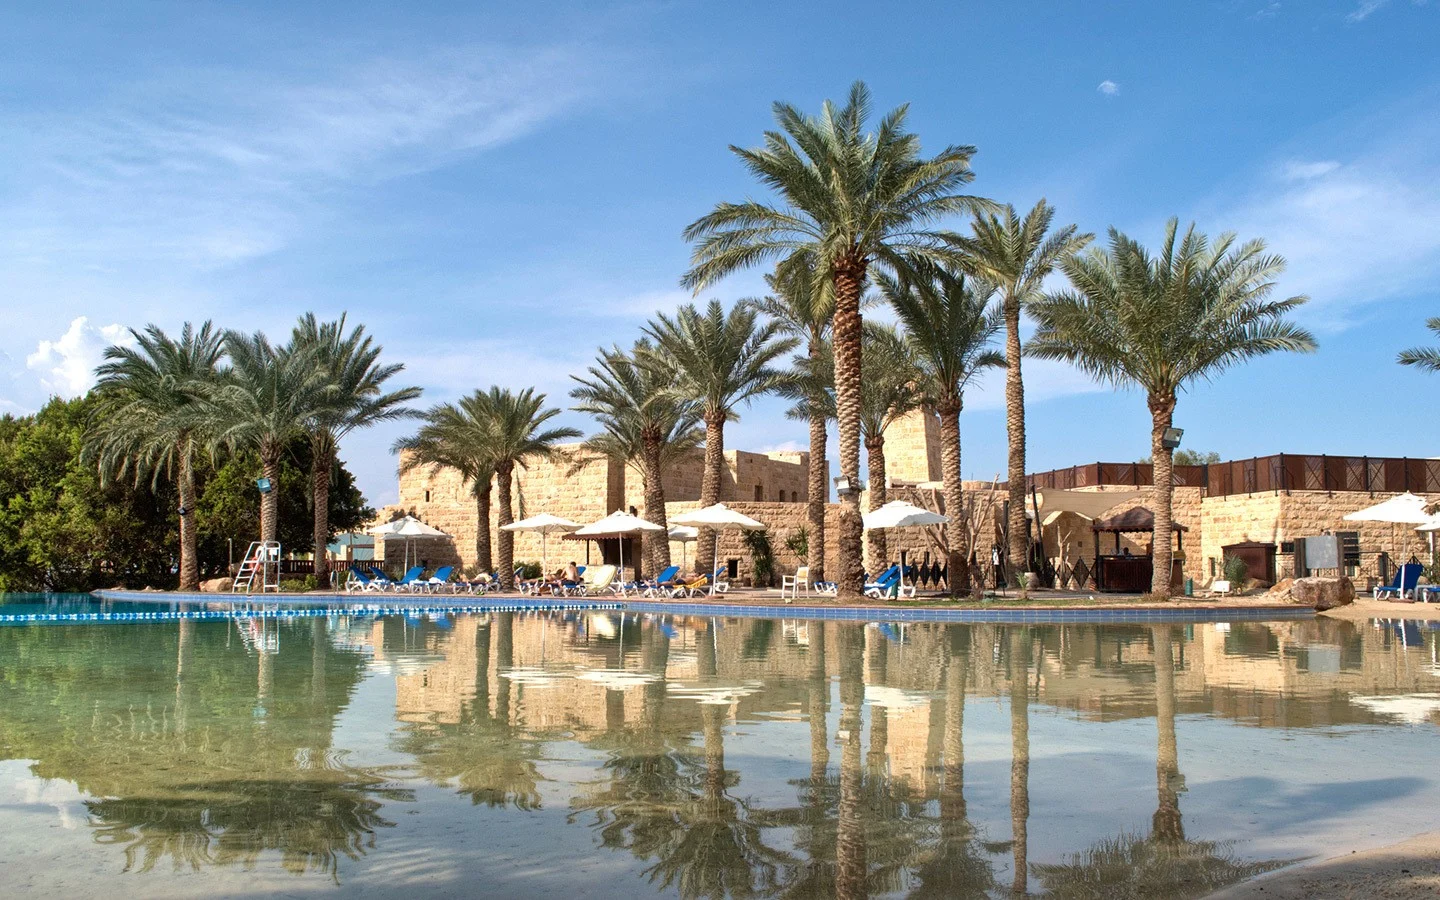 Mövenpick Dead Sea Resort & Spa in Jordan